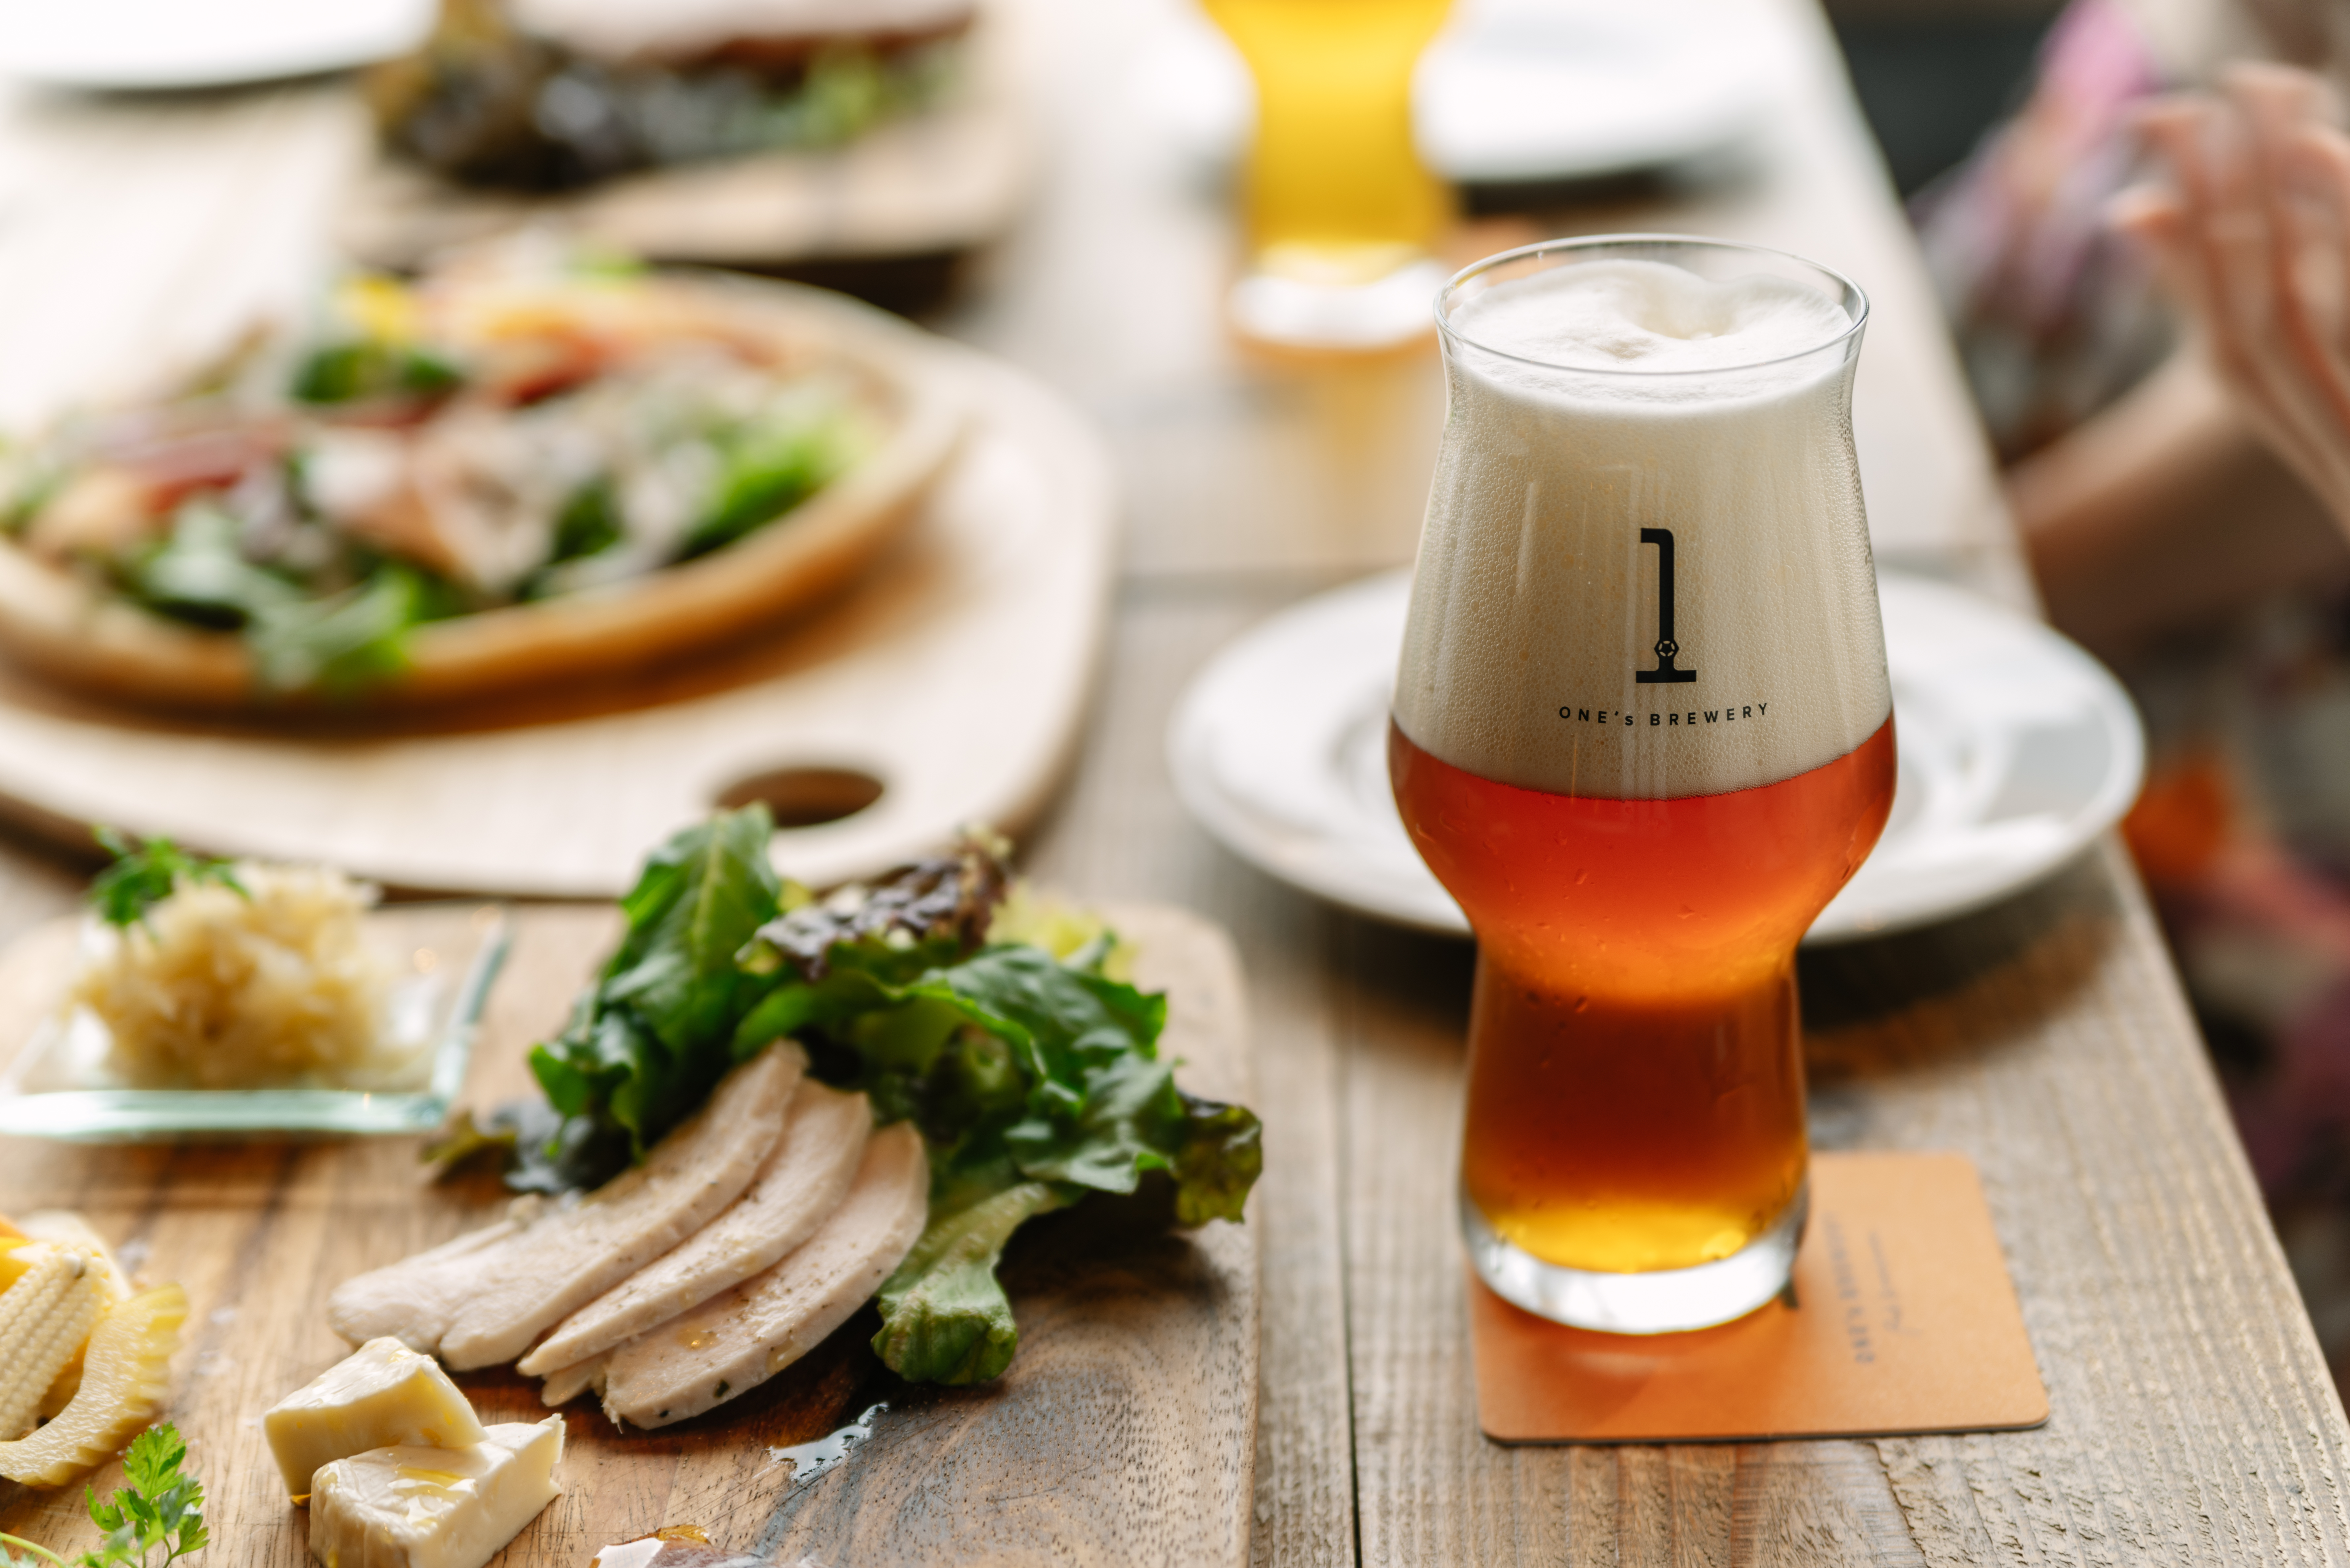 マイファーム、大阪クラフトビール醸造と事業連携。地域資源の循環を目指す